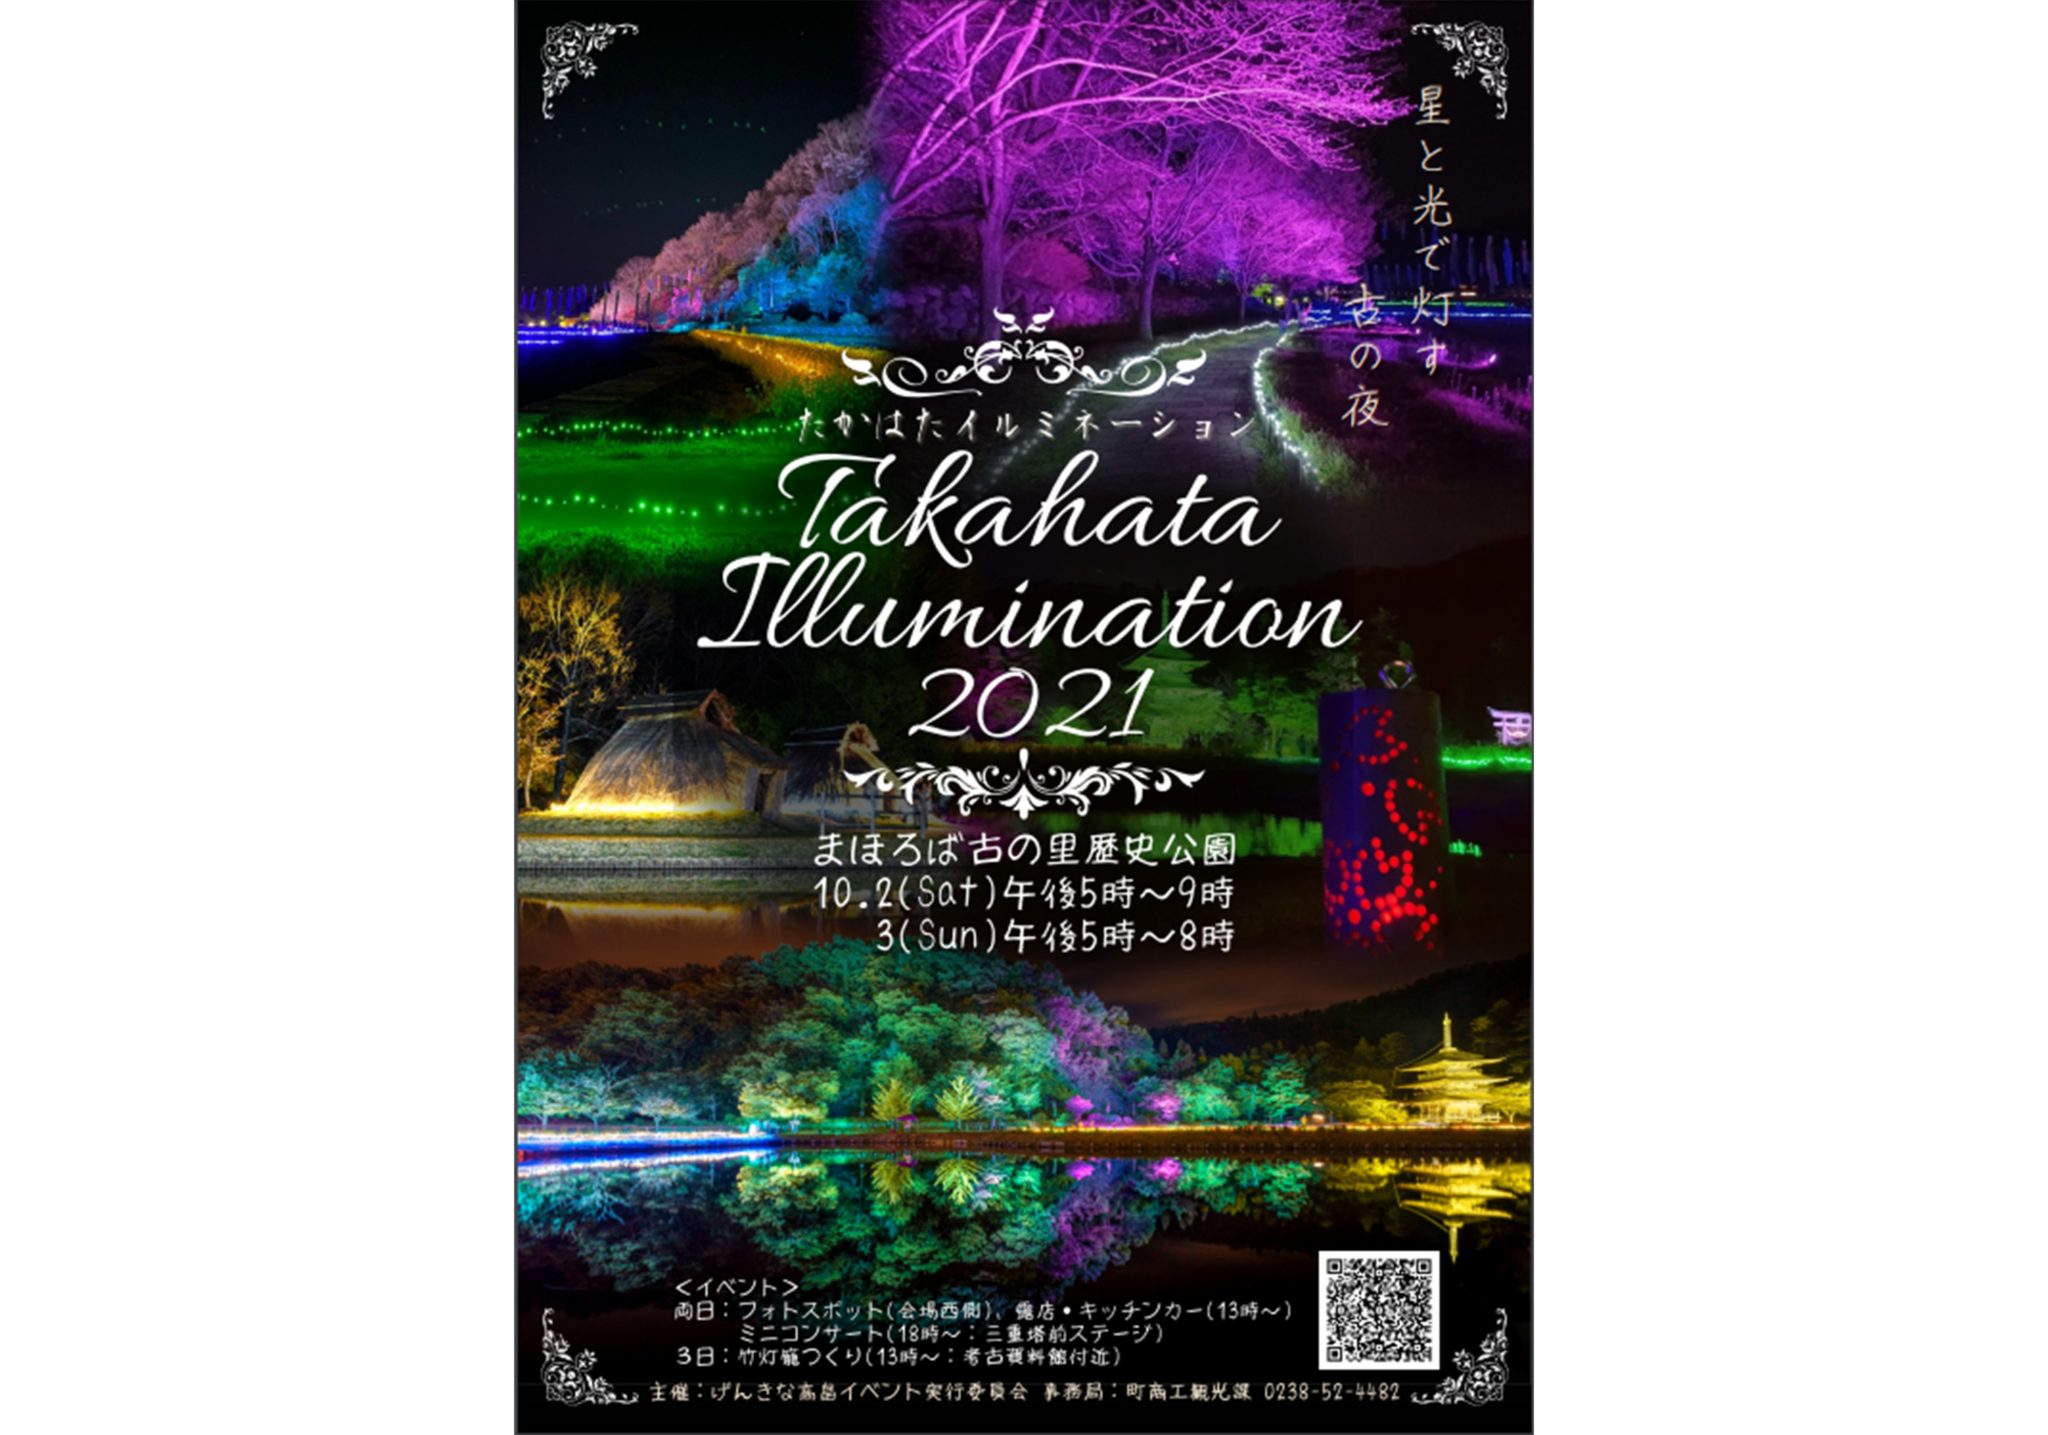 TAKAHATA ILLUMINATION 2021